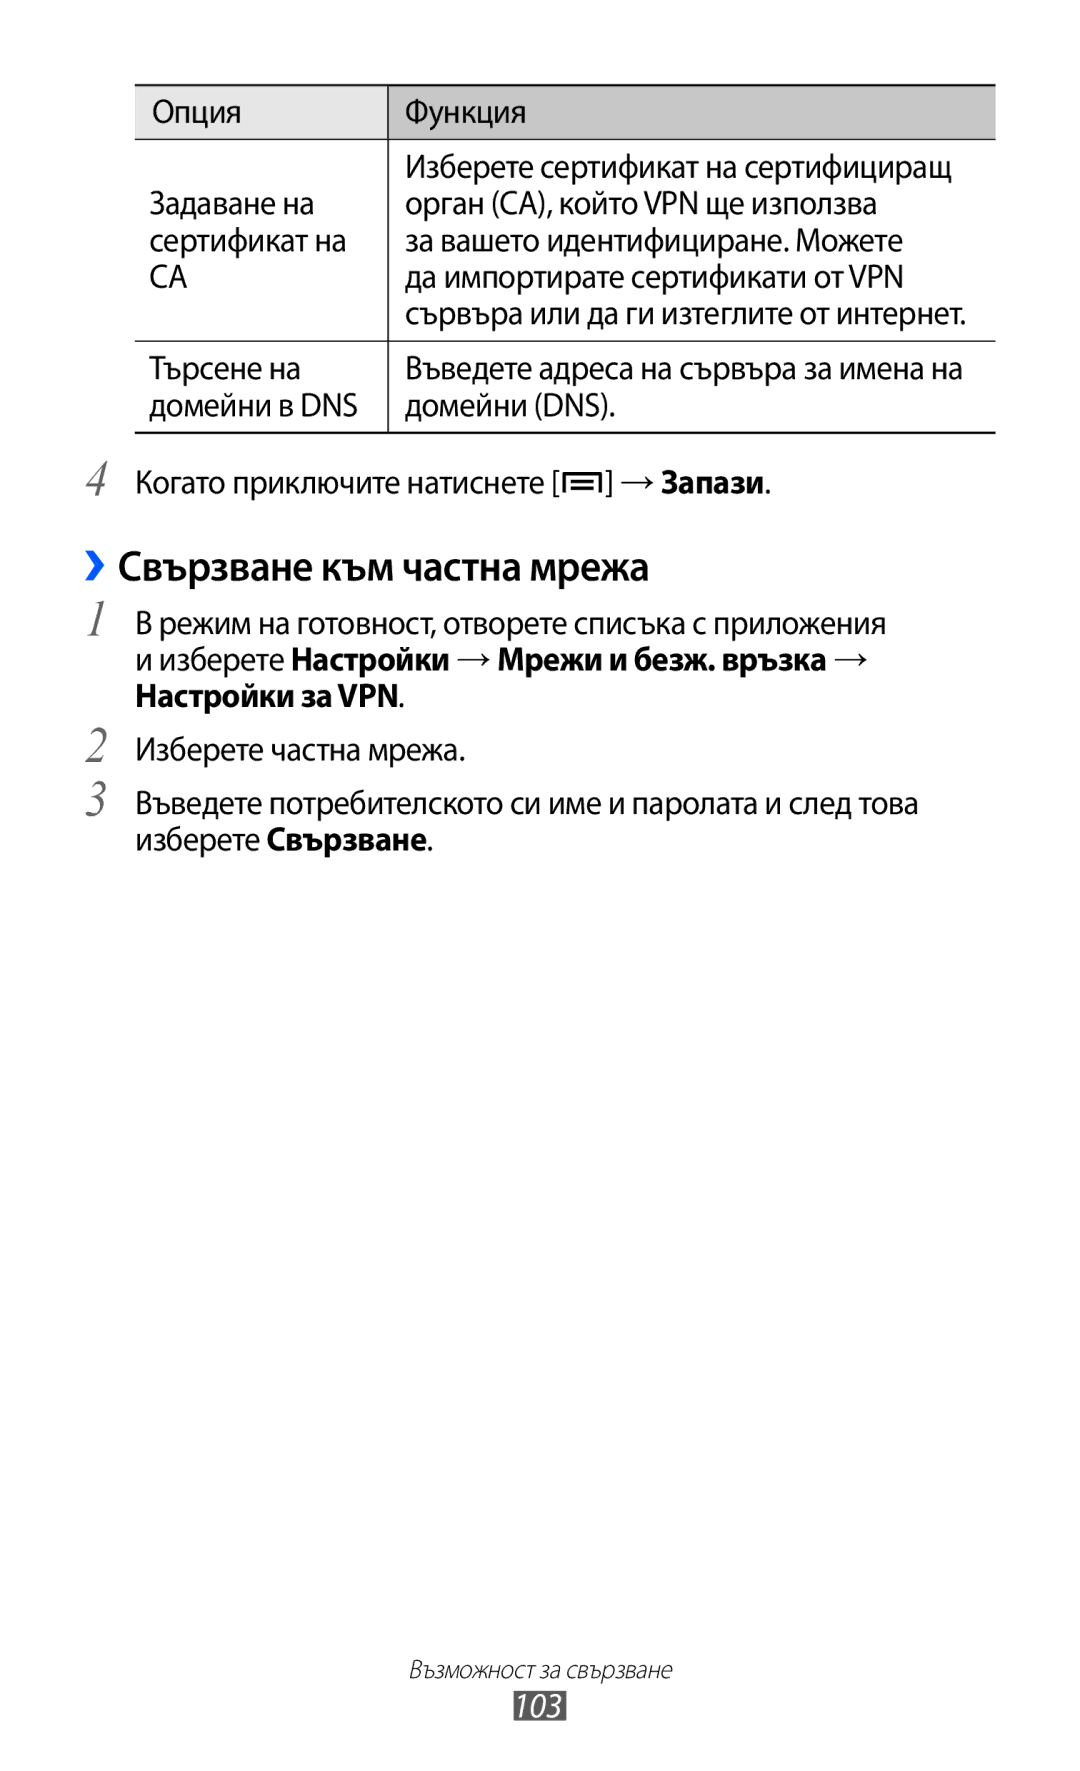 Samsung GT-S6802HKABGL manual ››Свързване към частна мрежа, 103, Опция Функция Задаване на, Орган СА, който VPN ще използва 